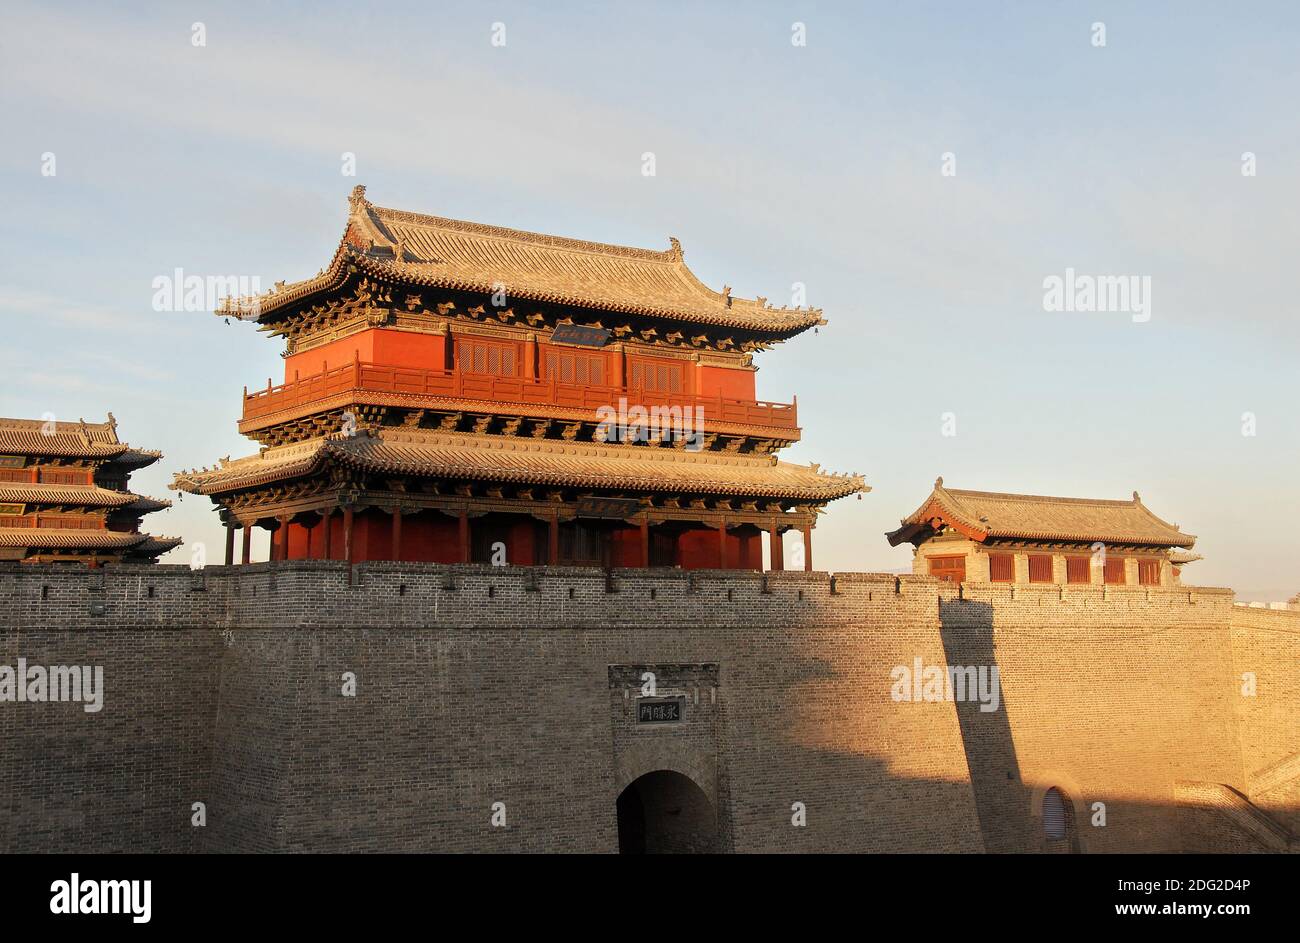 Datong, province du Shanxi en Chine. Une tour de guet sur le mur restauré de la ville de Datong vu dans le soleil de la fin de l'après-midi. Banque D'Images